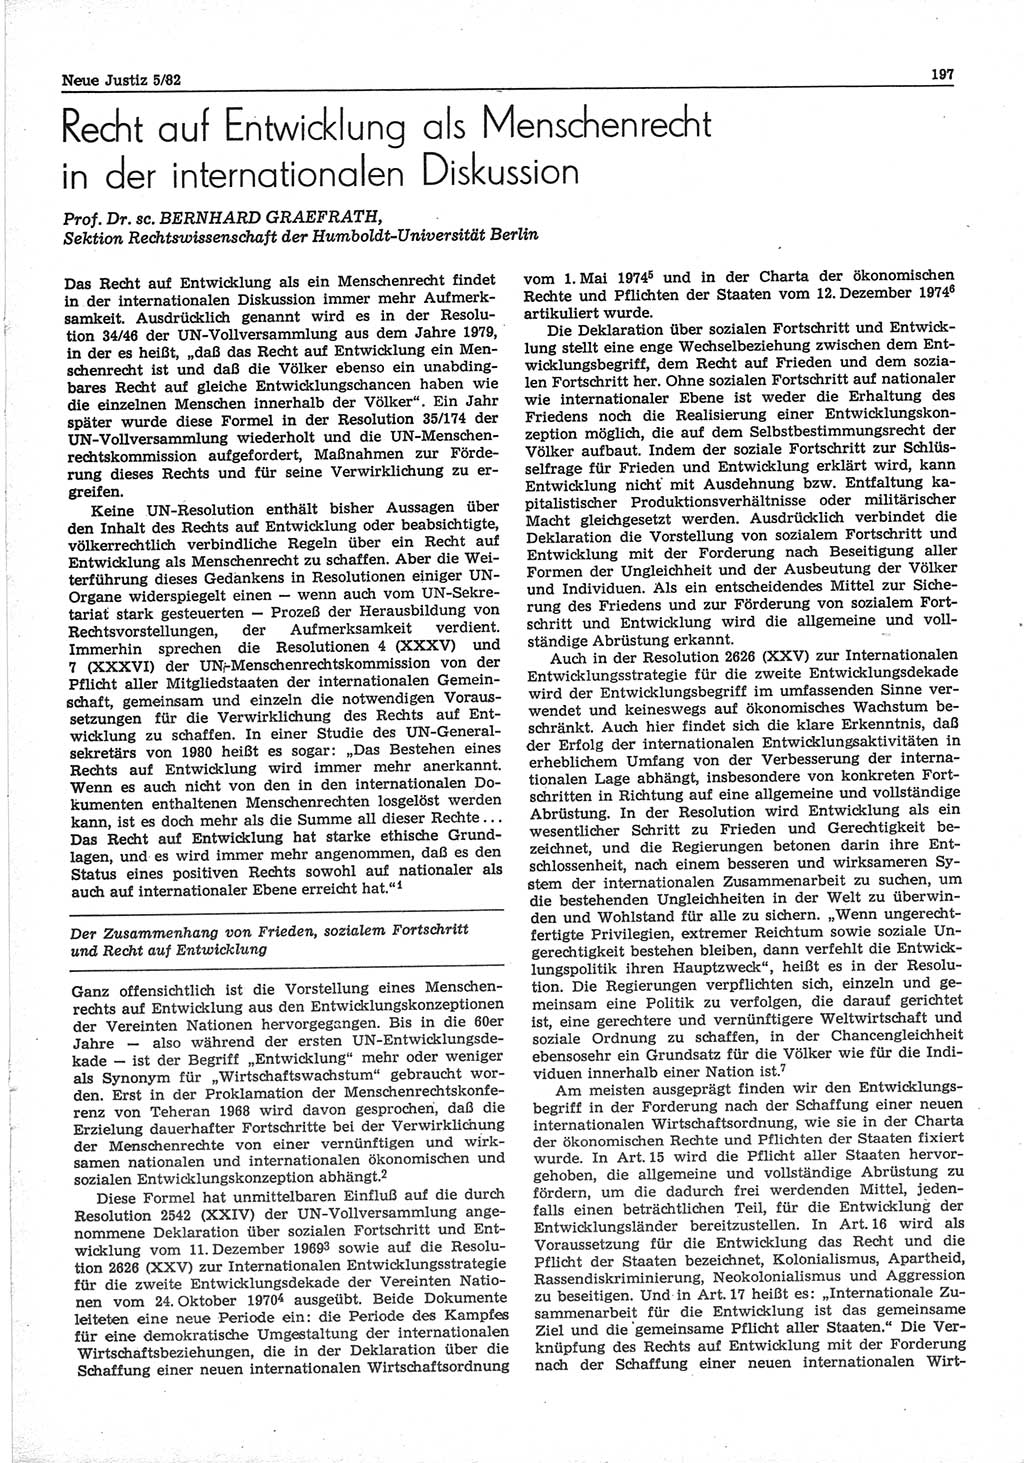 Neue Justiz (NJ), Zeitschrift für sozialistisches Recht und Gesetzlichkeit [Deutsche Demokratische Republik (DDR)], 36. Jahrgang 1982, Seite 197 (NJ DDR 1982, S. 197)